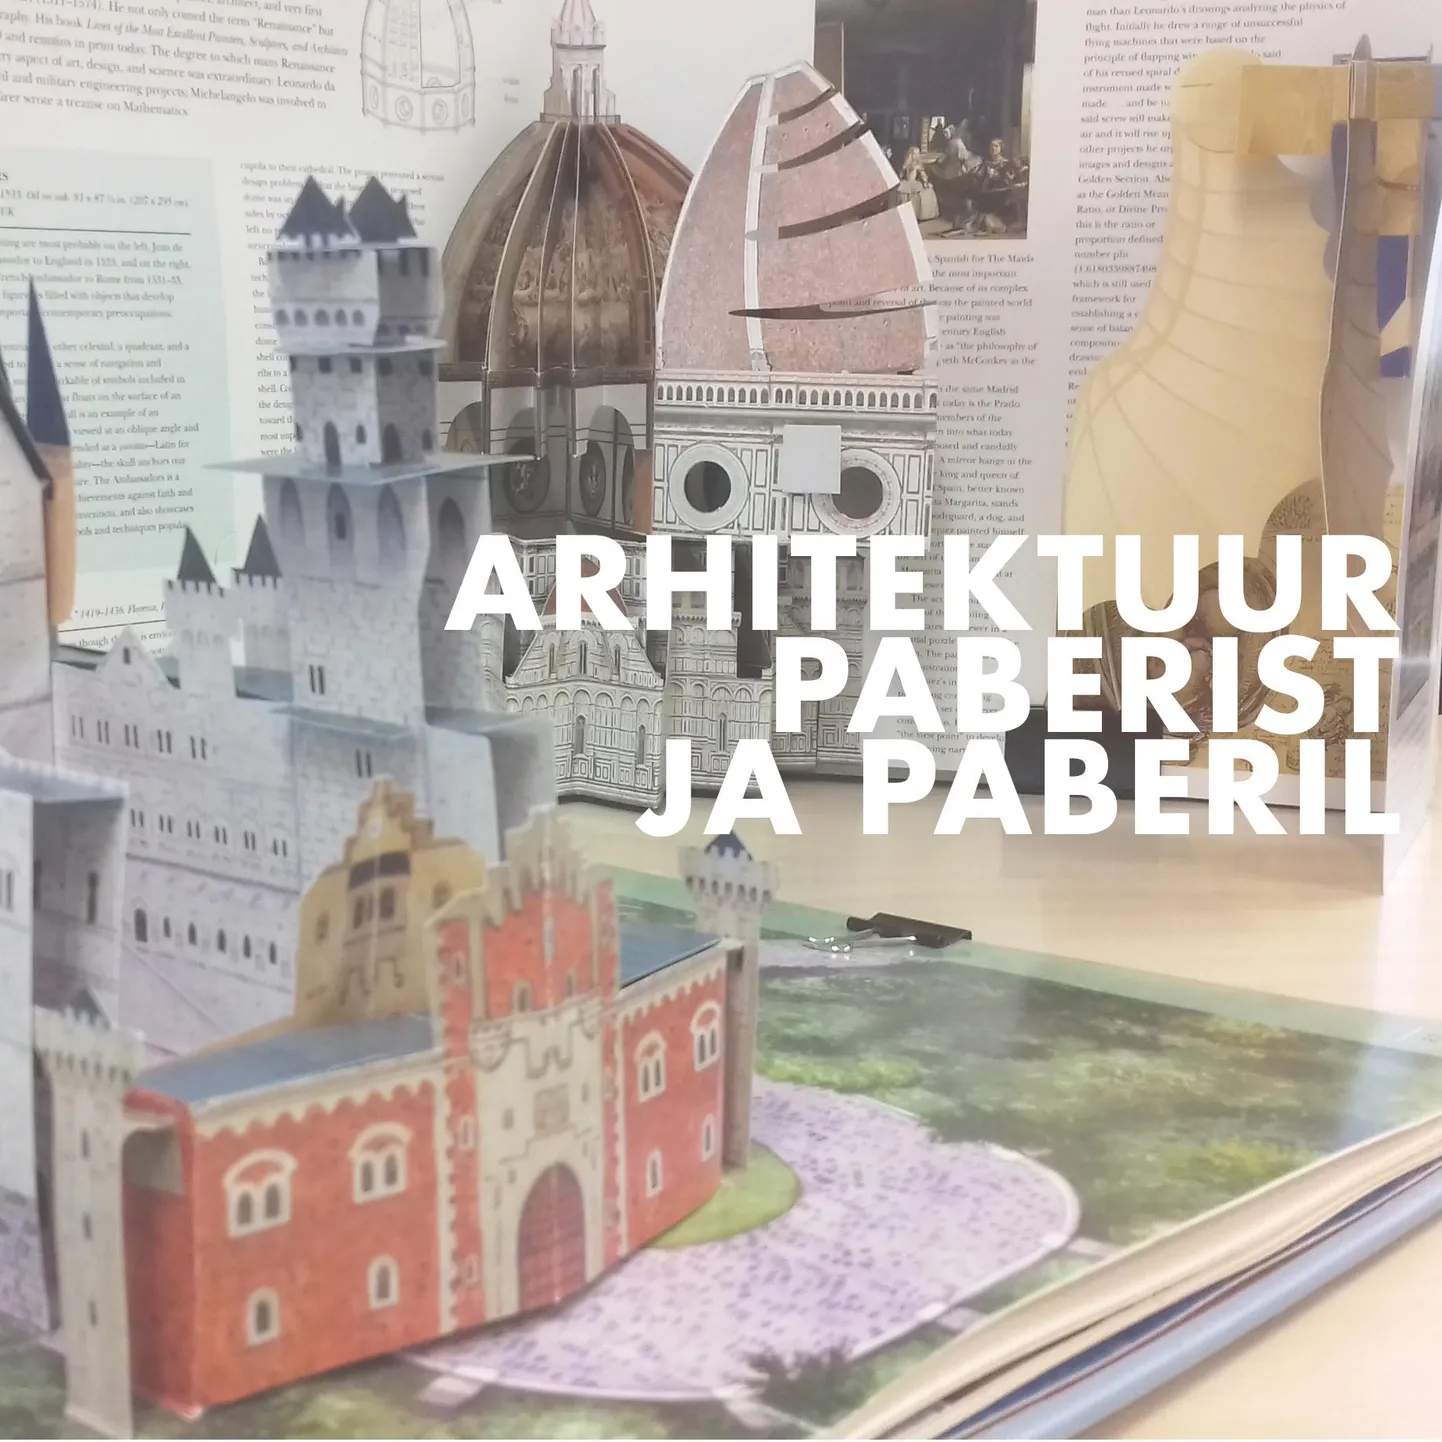 Tamsalu raamatukogus saab vaadata Eesti trüki- ja paberimuuseumi näitust "Arhitektuur paberis ja paberist".